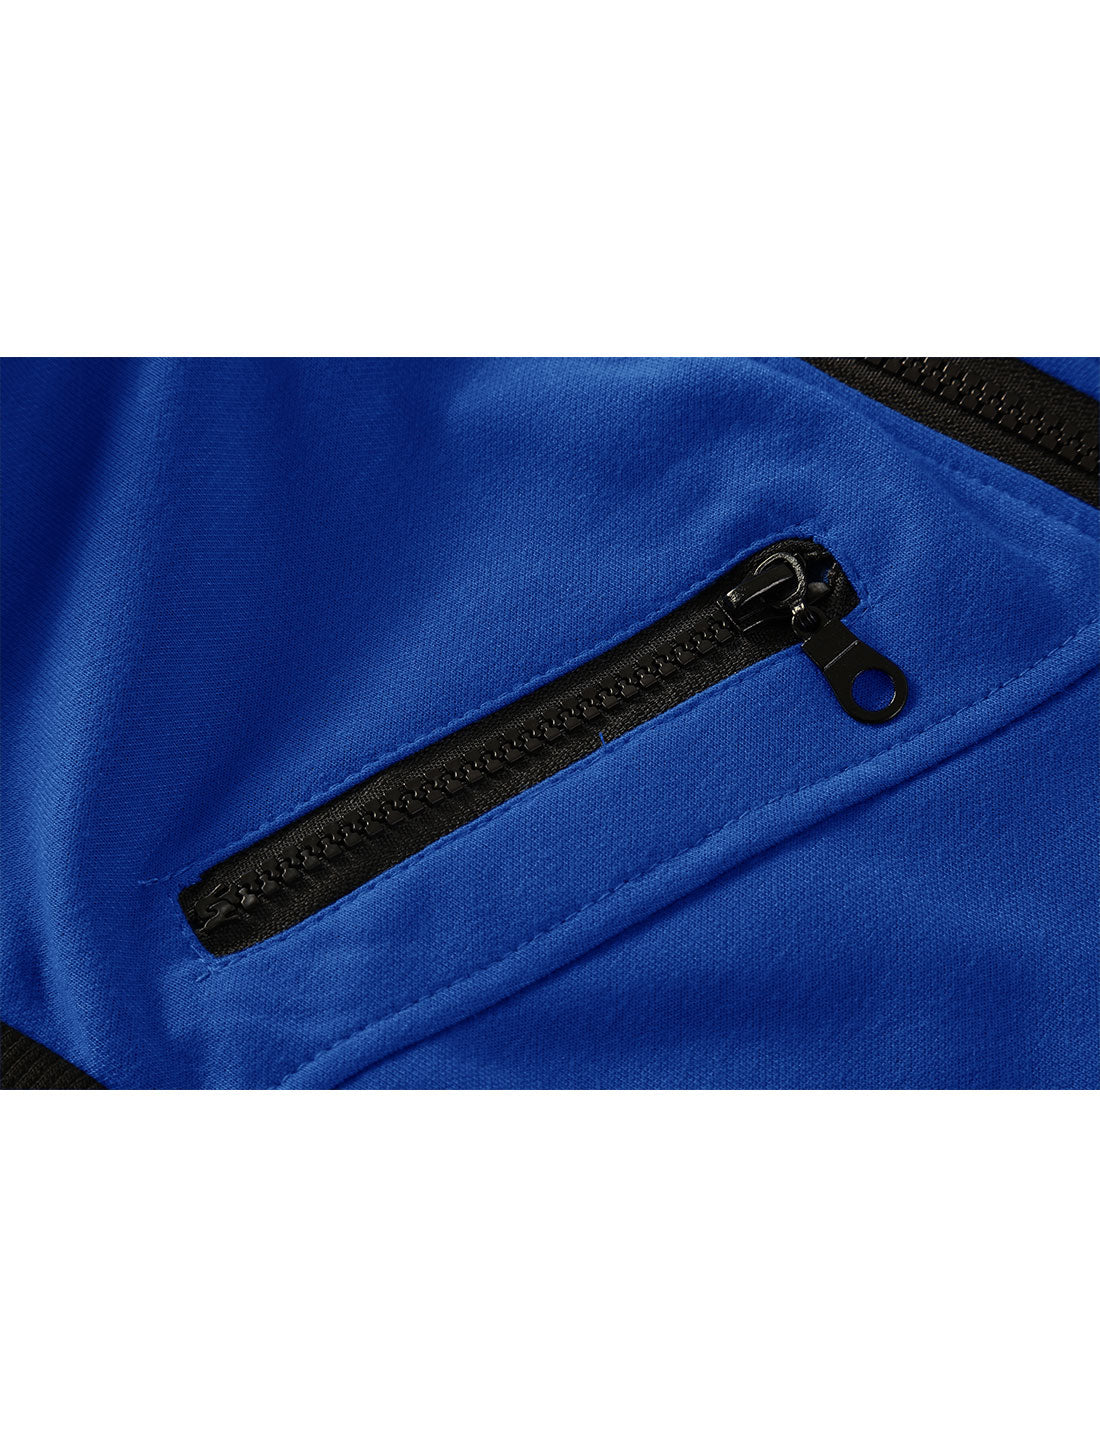 Bublédon Kangaroo Pocket Zip Up Drawstring Hooded Vest